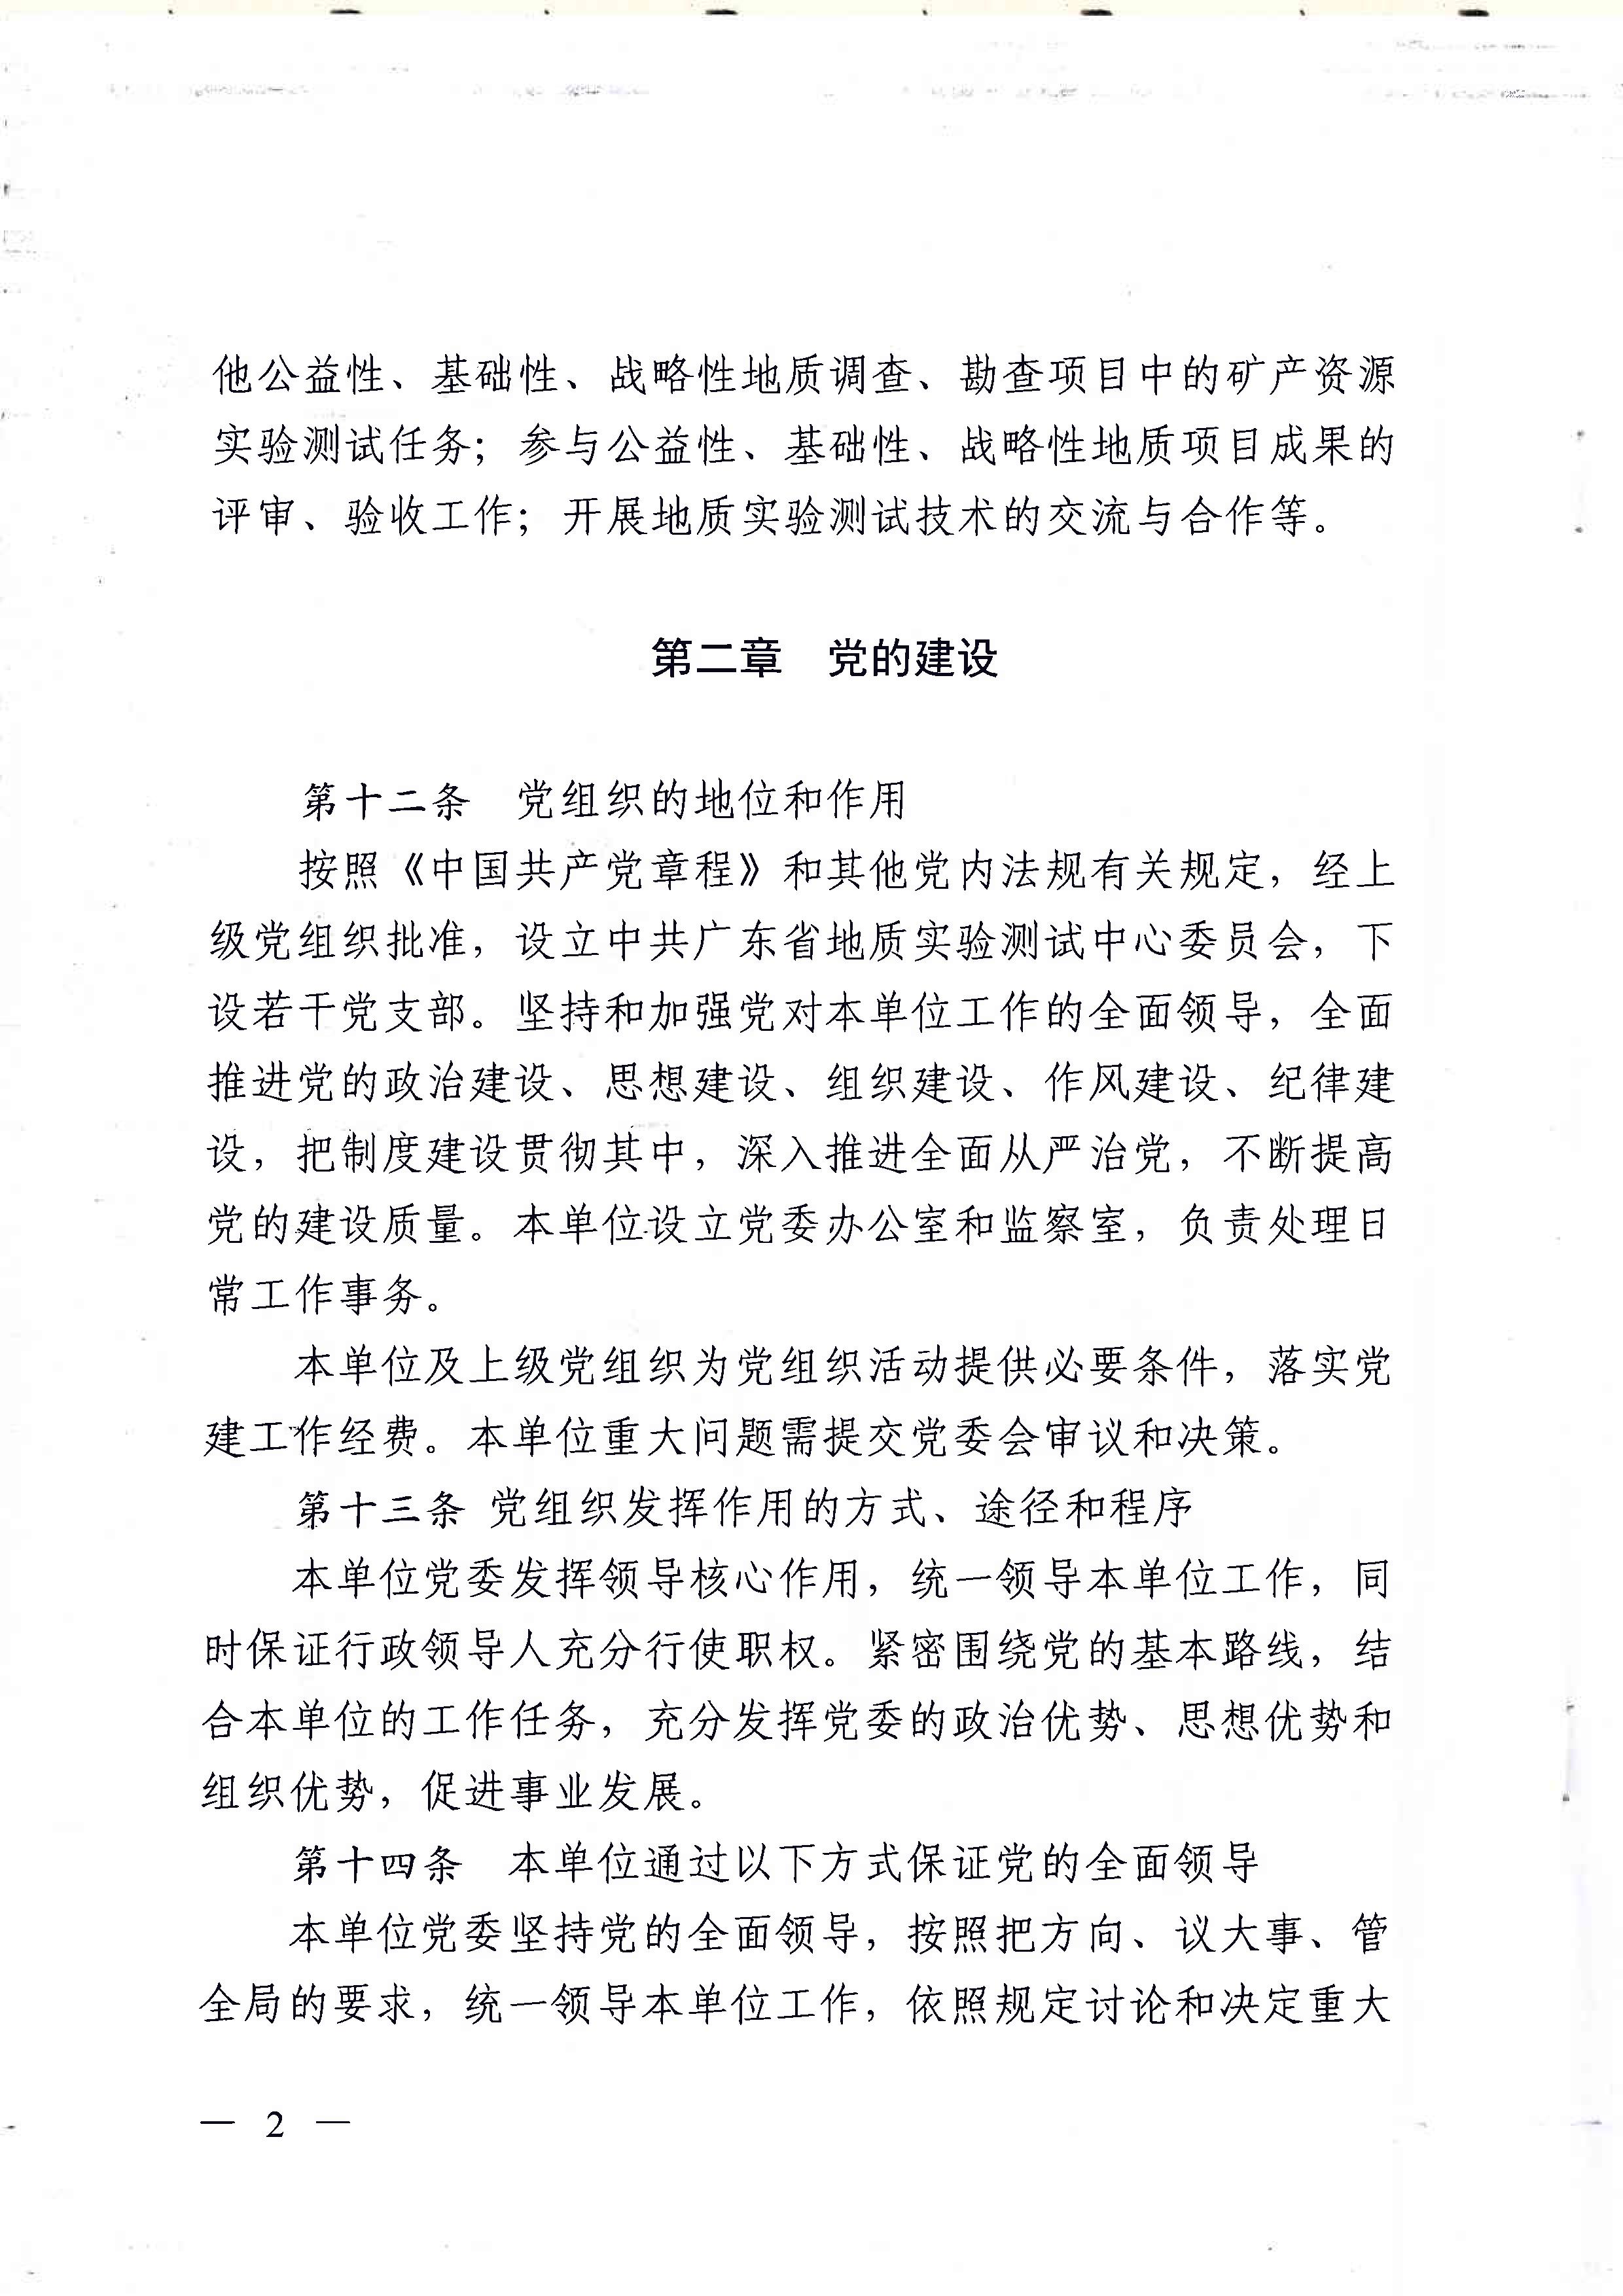 广东省地质实验测试中心事业单位章程 - 0002.jpg